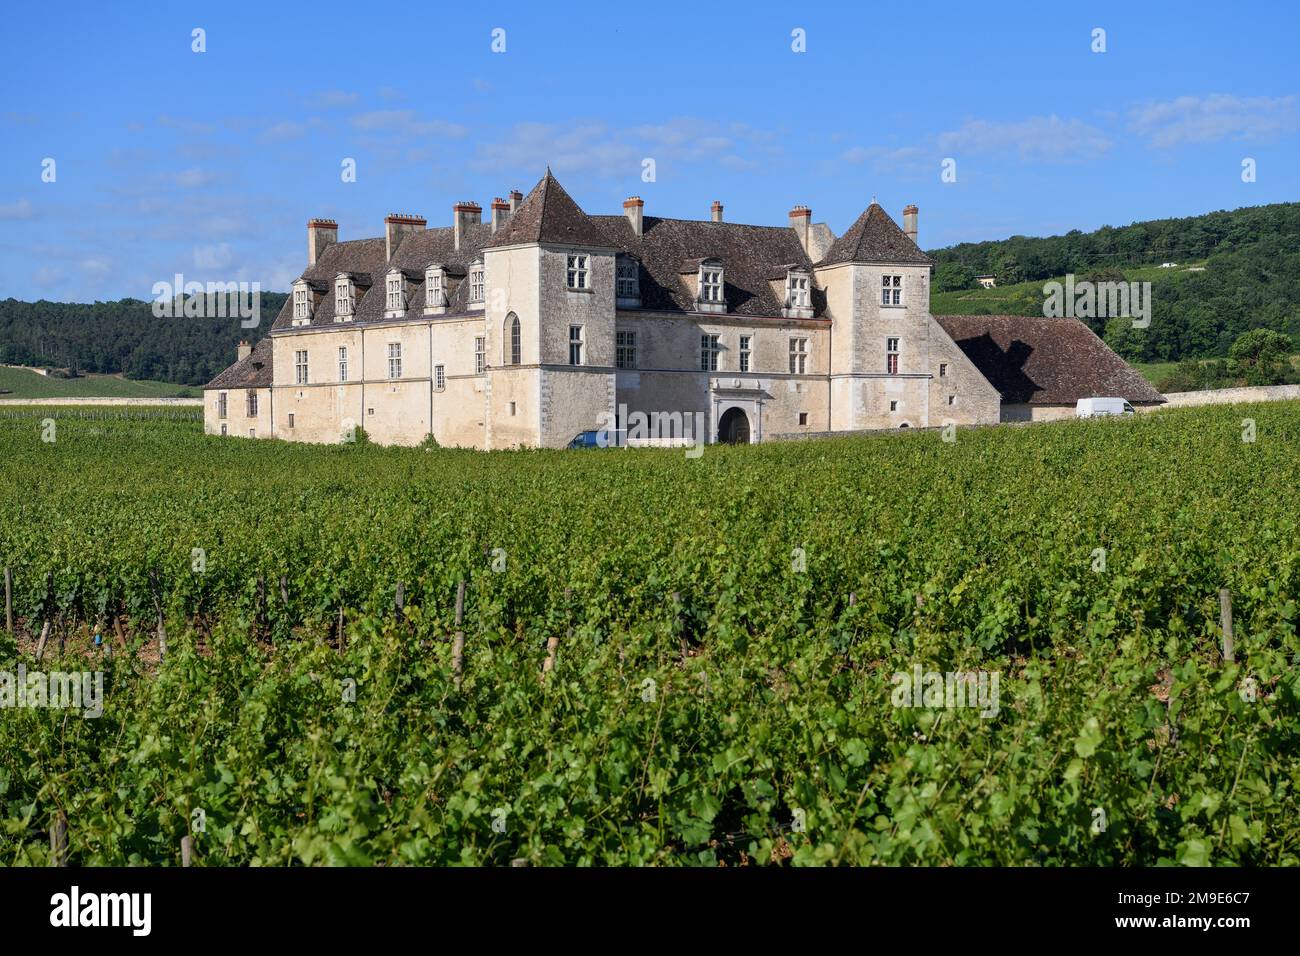 Viñedo Chateau du Clos de Vougeot, near Nuits-Saint-George, Cote-dor departamento, Bourgogne-Franche-Comte, Borgoña, Francia Foto de stock